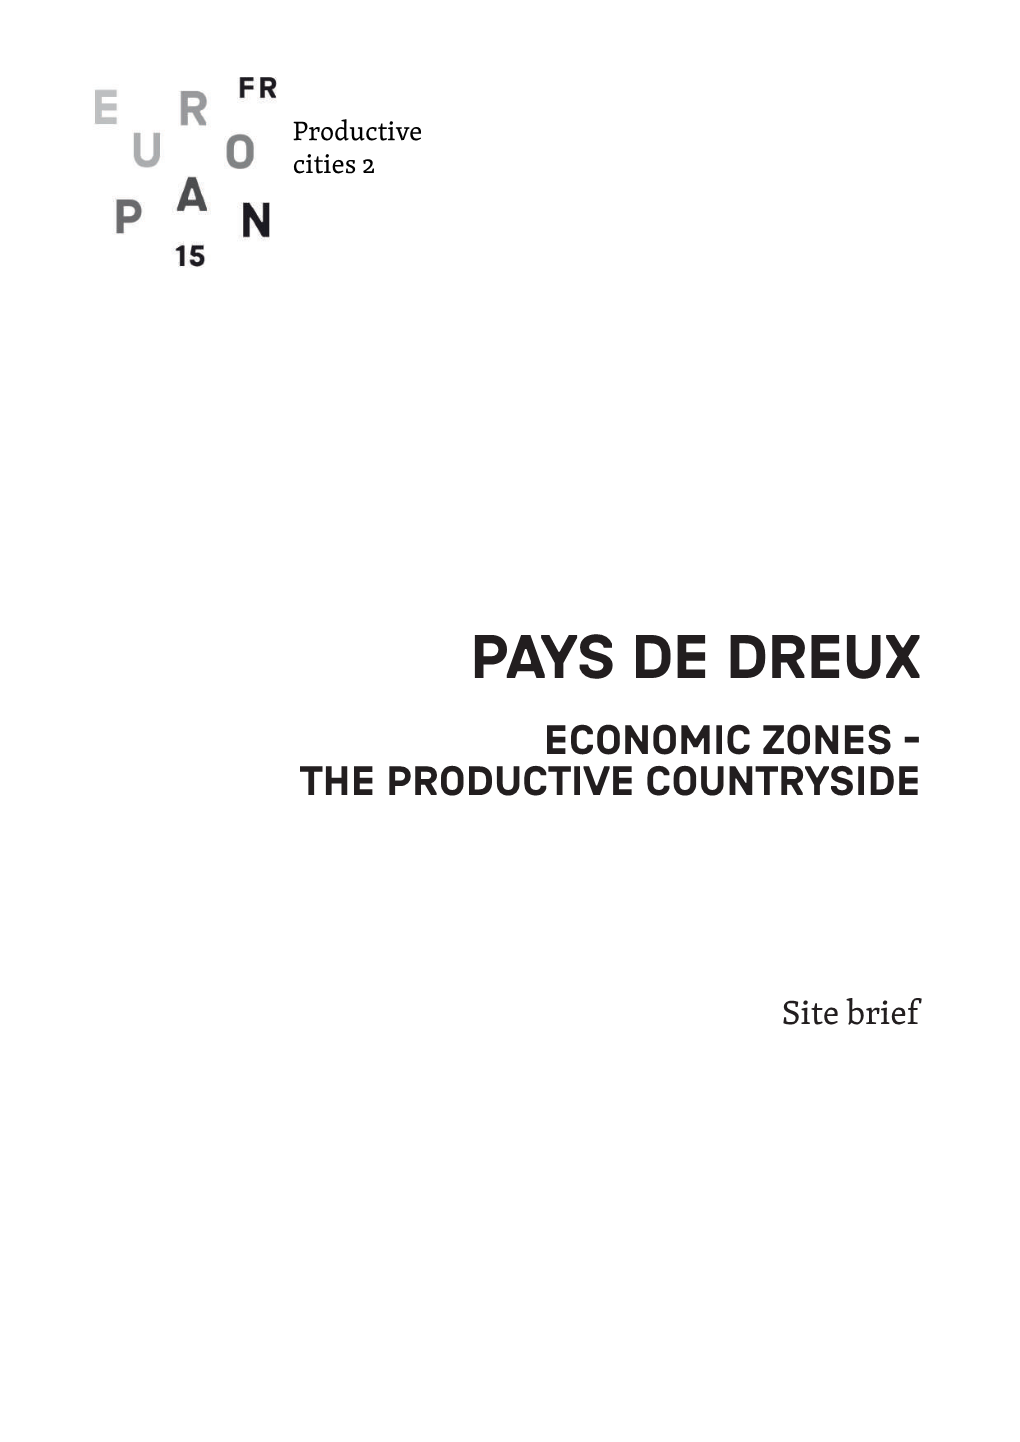 Pays De Dreux Economic ZONES - the PRODUCTIVE COUNTRYSIDE